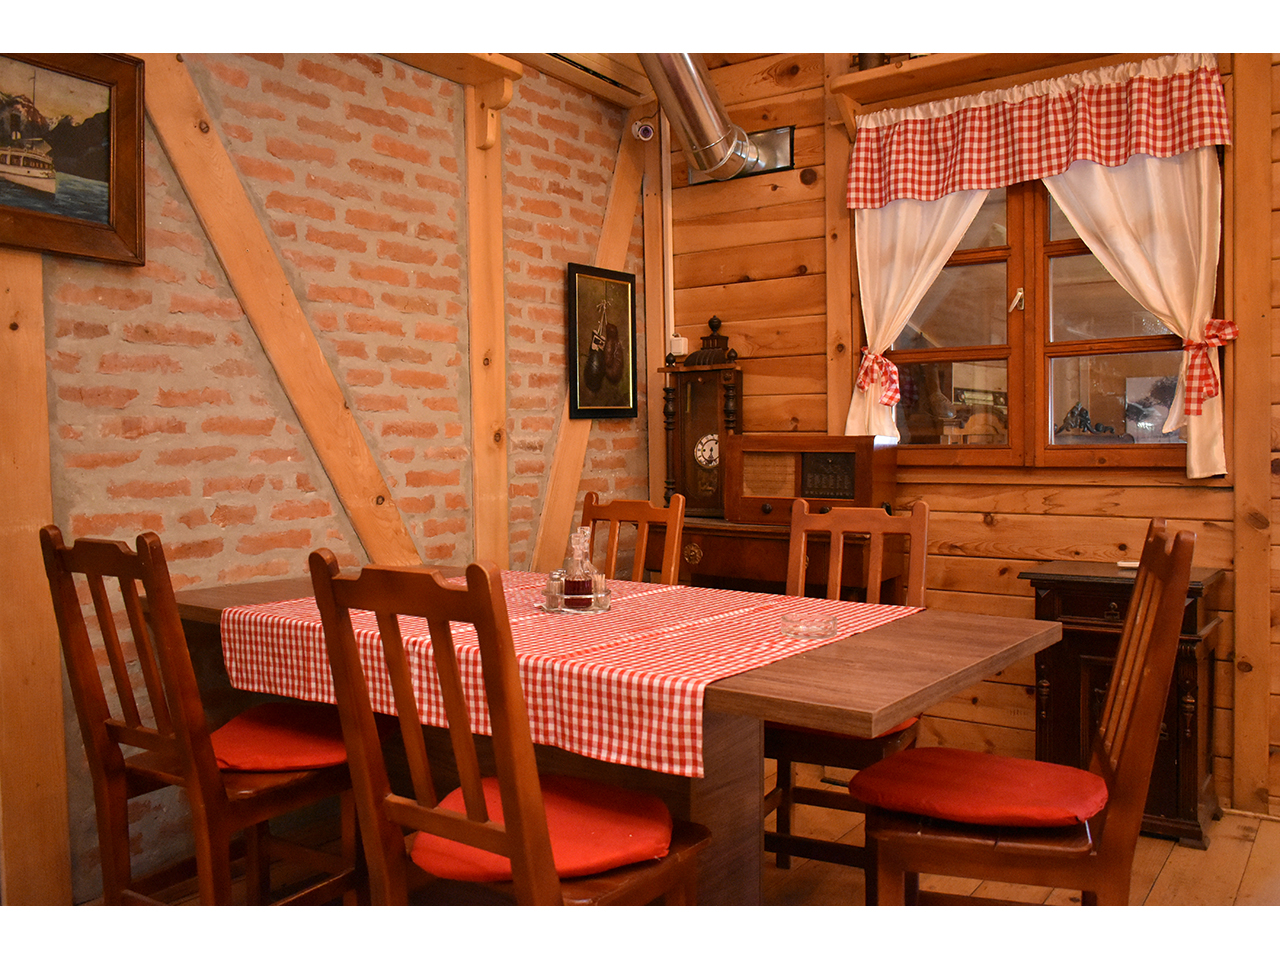 Slika 7 - RESTORAN MALA GALOVICA Restorani Beograd